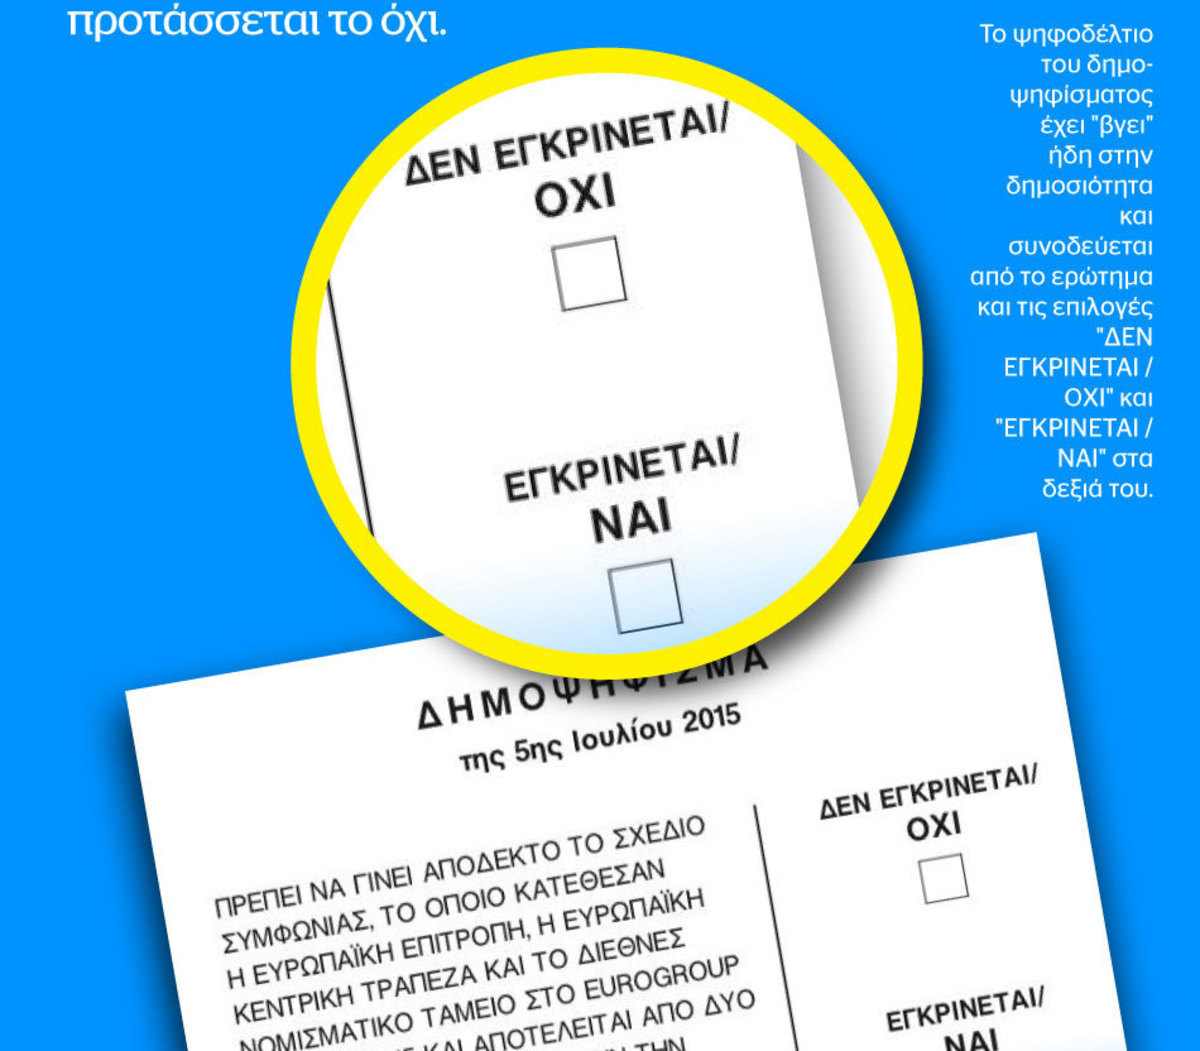 Δημοψήφισμα: Το ψηφοδέλτιο είναι υπερ του “Όχι”! Συνταγματολόγος Μανιτάκης: Μεροληπτική η διατύπωση